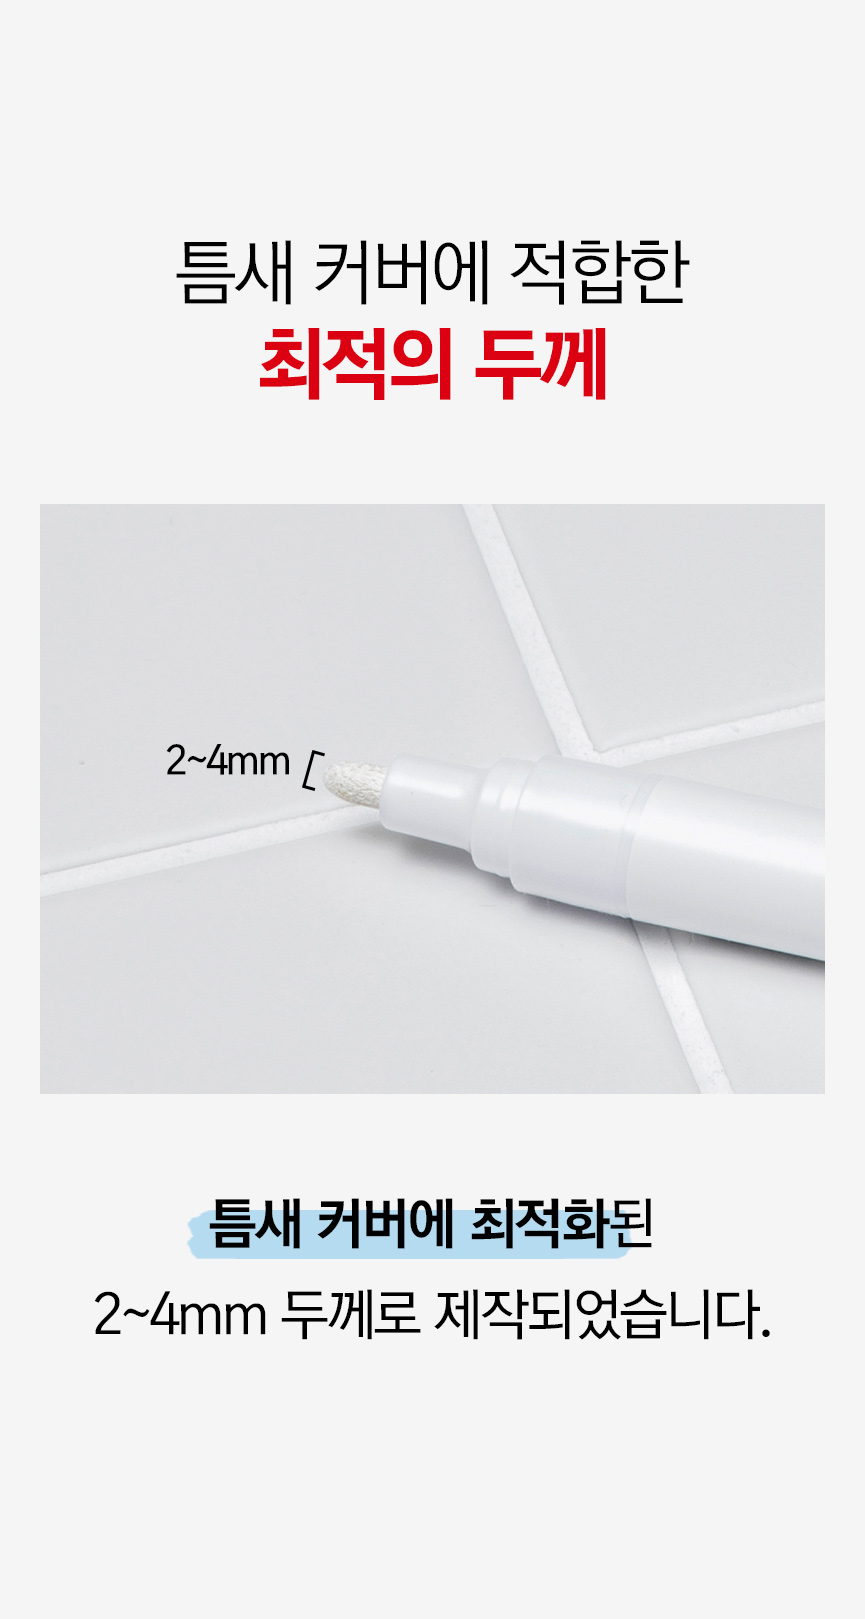 韓國食品-[Cleanboss] Neat marker for gap (2 marker + 6 pen tips)